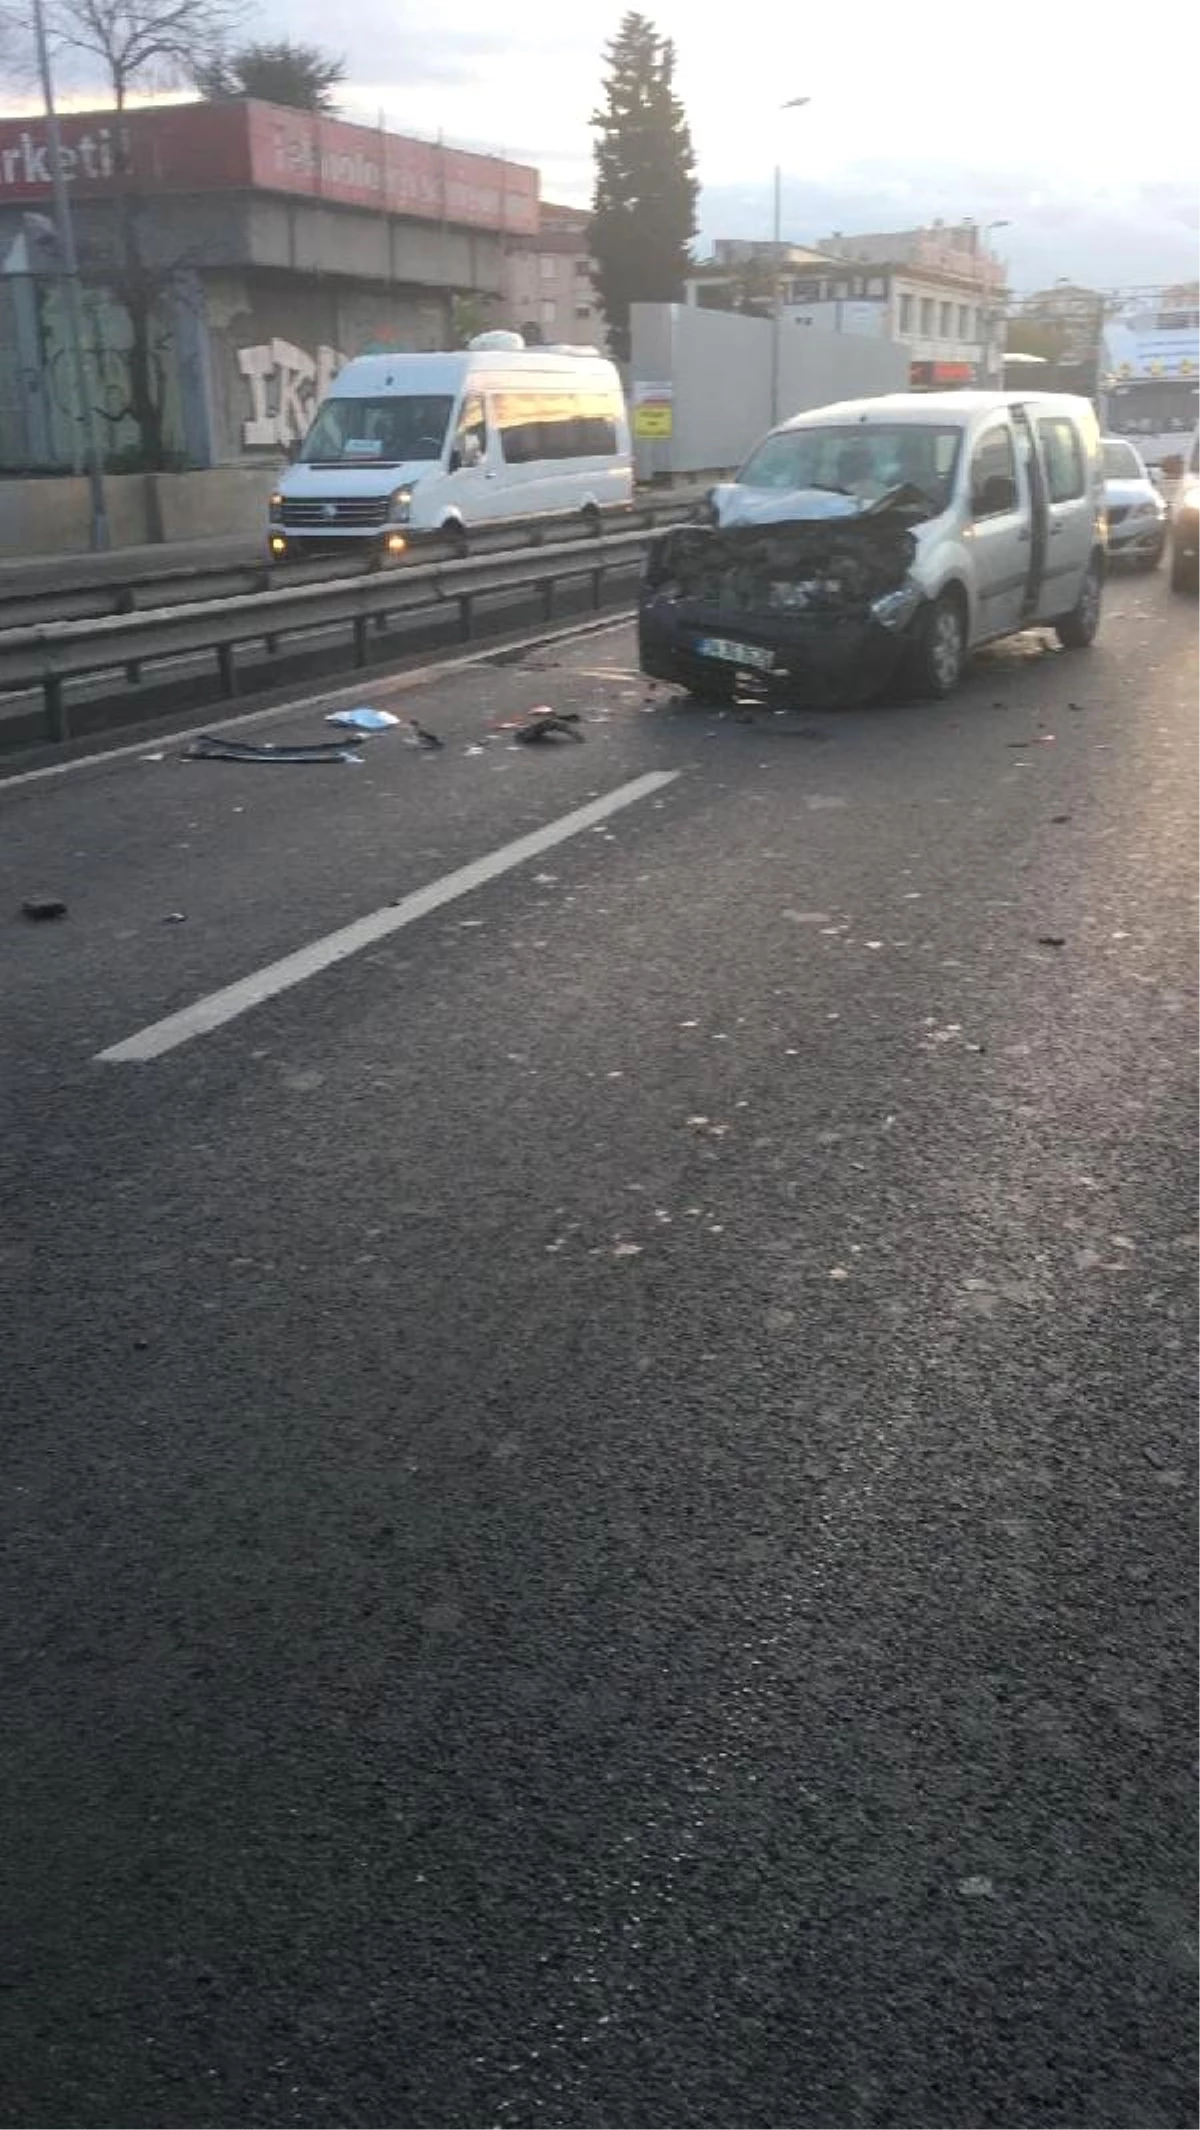 Ek Fotoğraflar//d-100\'de Kaza Sonrası Aracın Arkasında Duran 2 Kadına Otomobil Çarptı